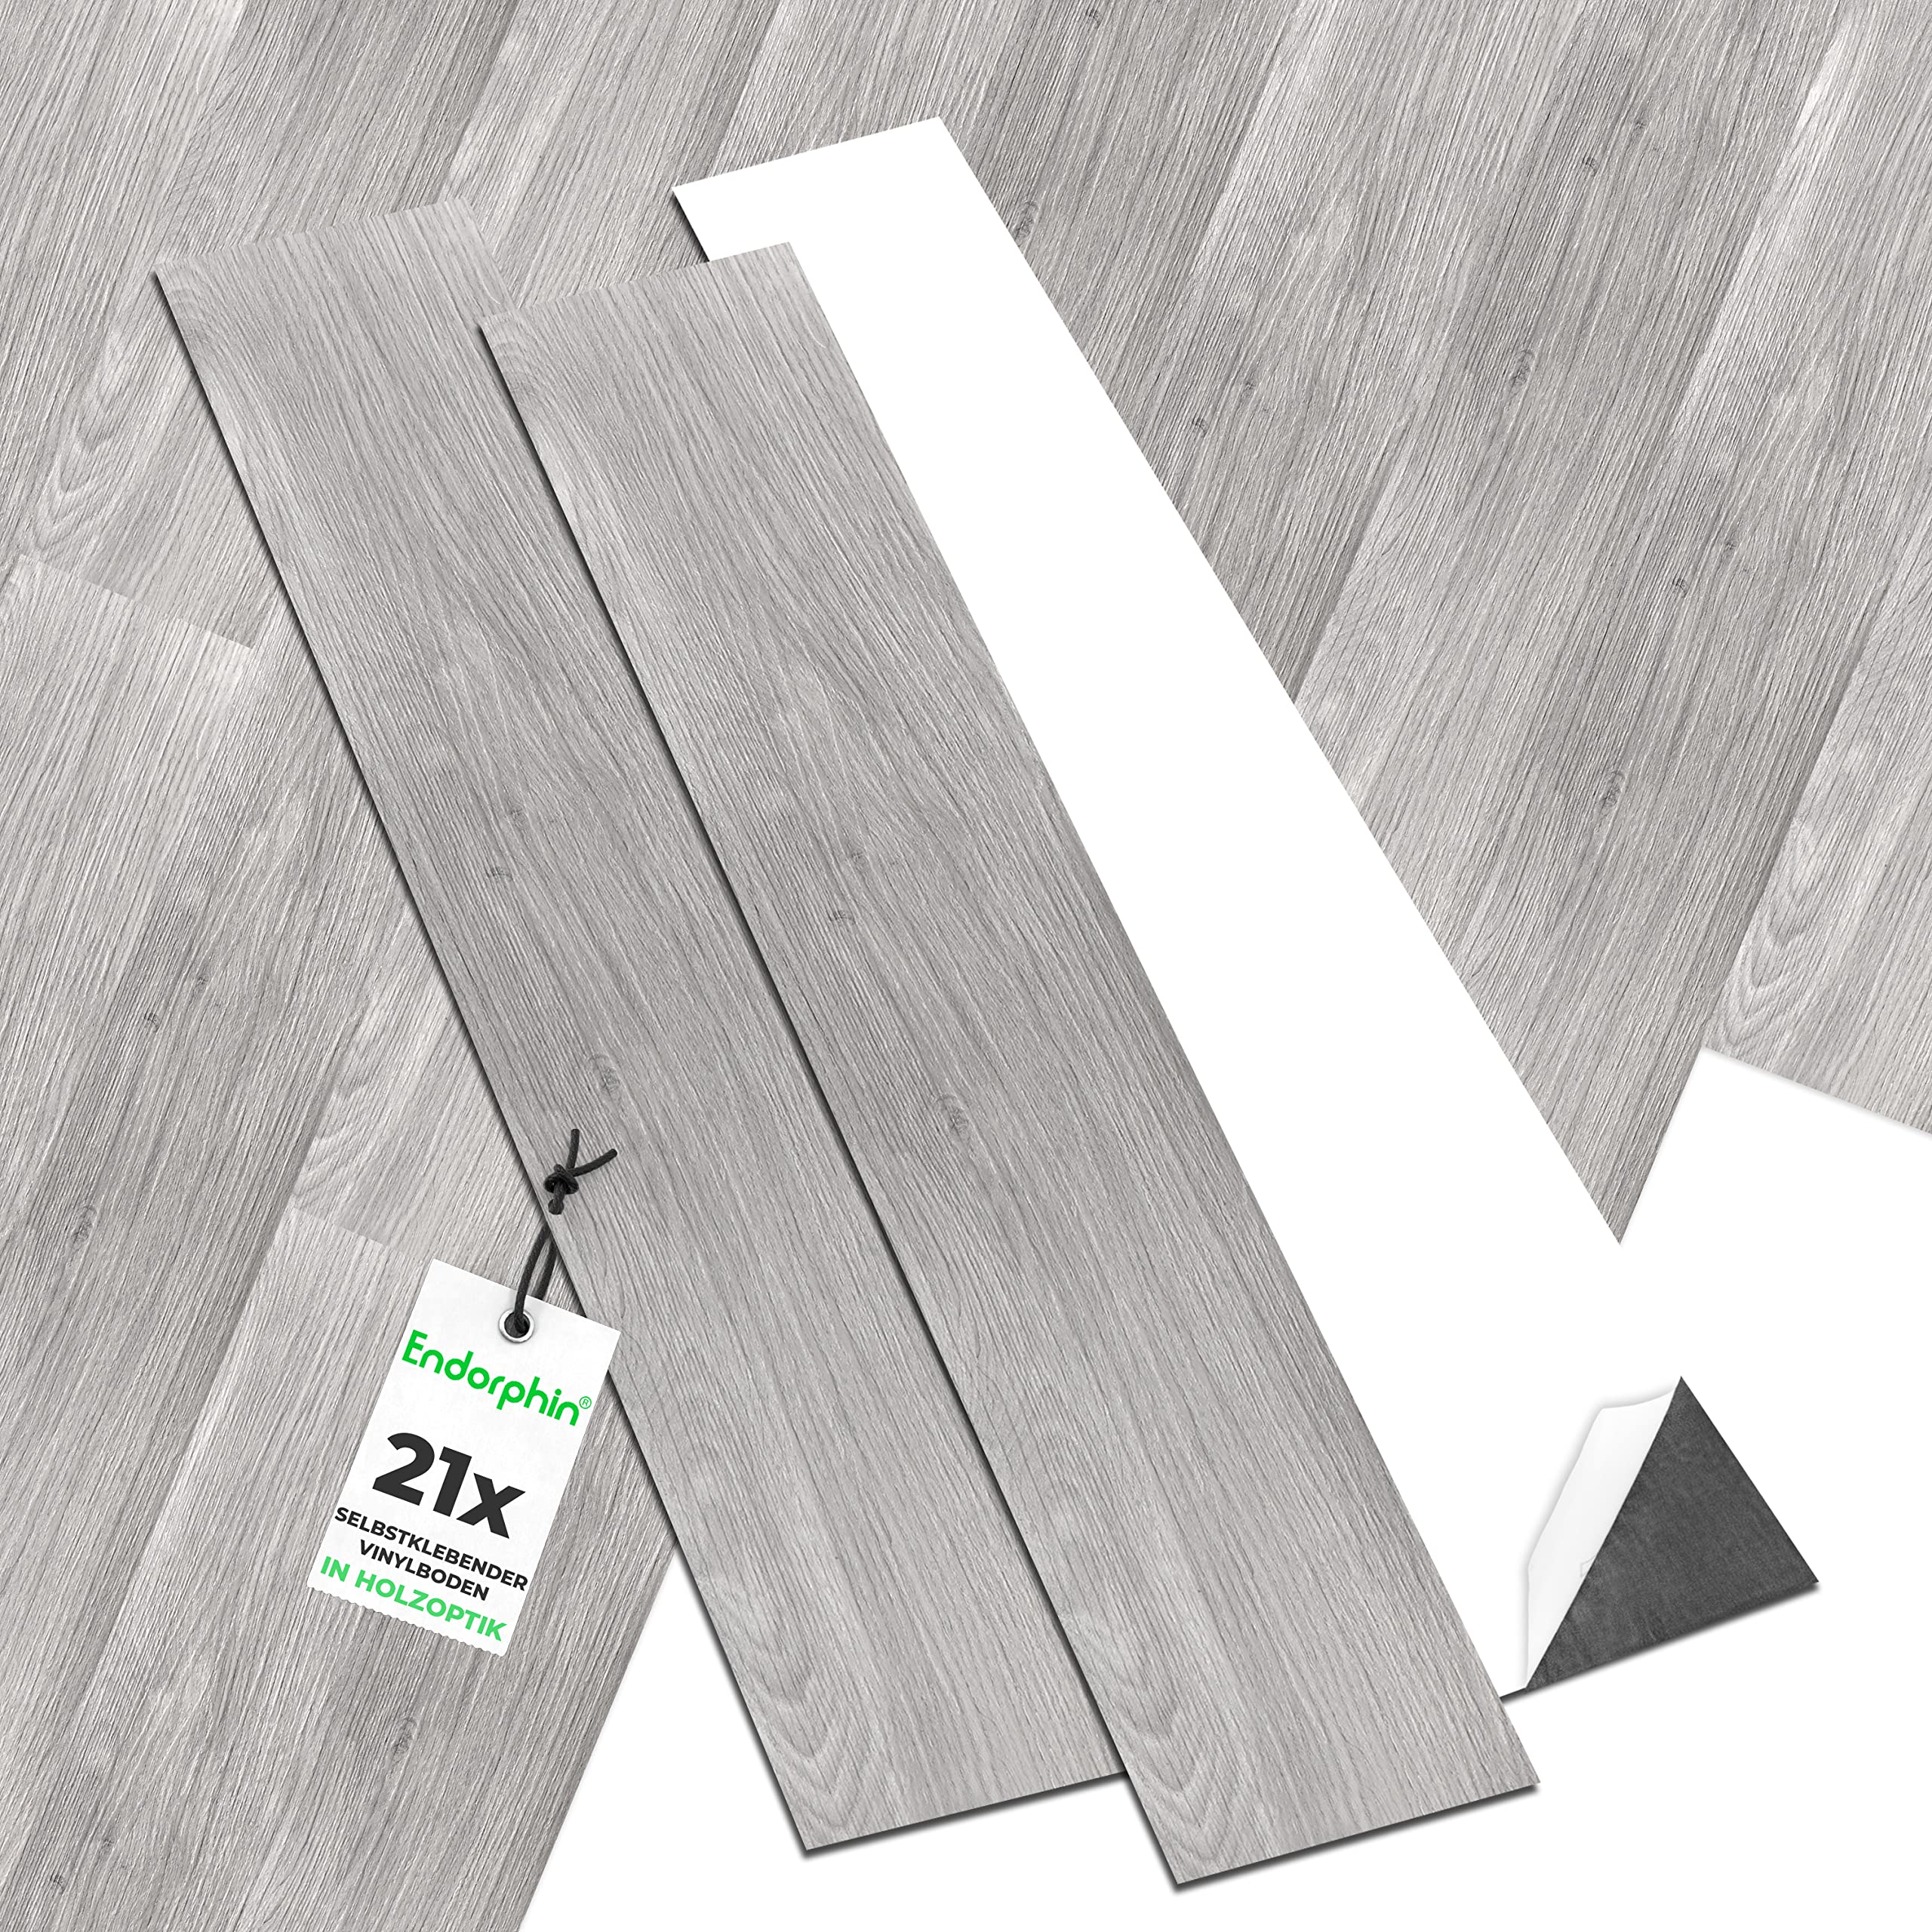 ENDORPHIN® PVC Bodenbelag in Hellgrau | Vinylboden mit Holz-Optik | aus recyceltem Material | 91,44 x 15,24 x 0,2cm | 21 Stück für circa 2,93qm | Selbstklebender Holzboden | Klebefliesen